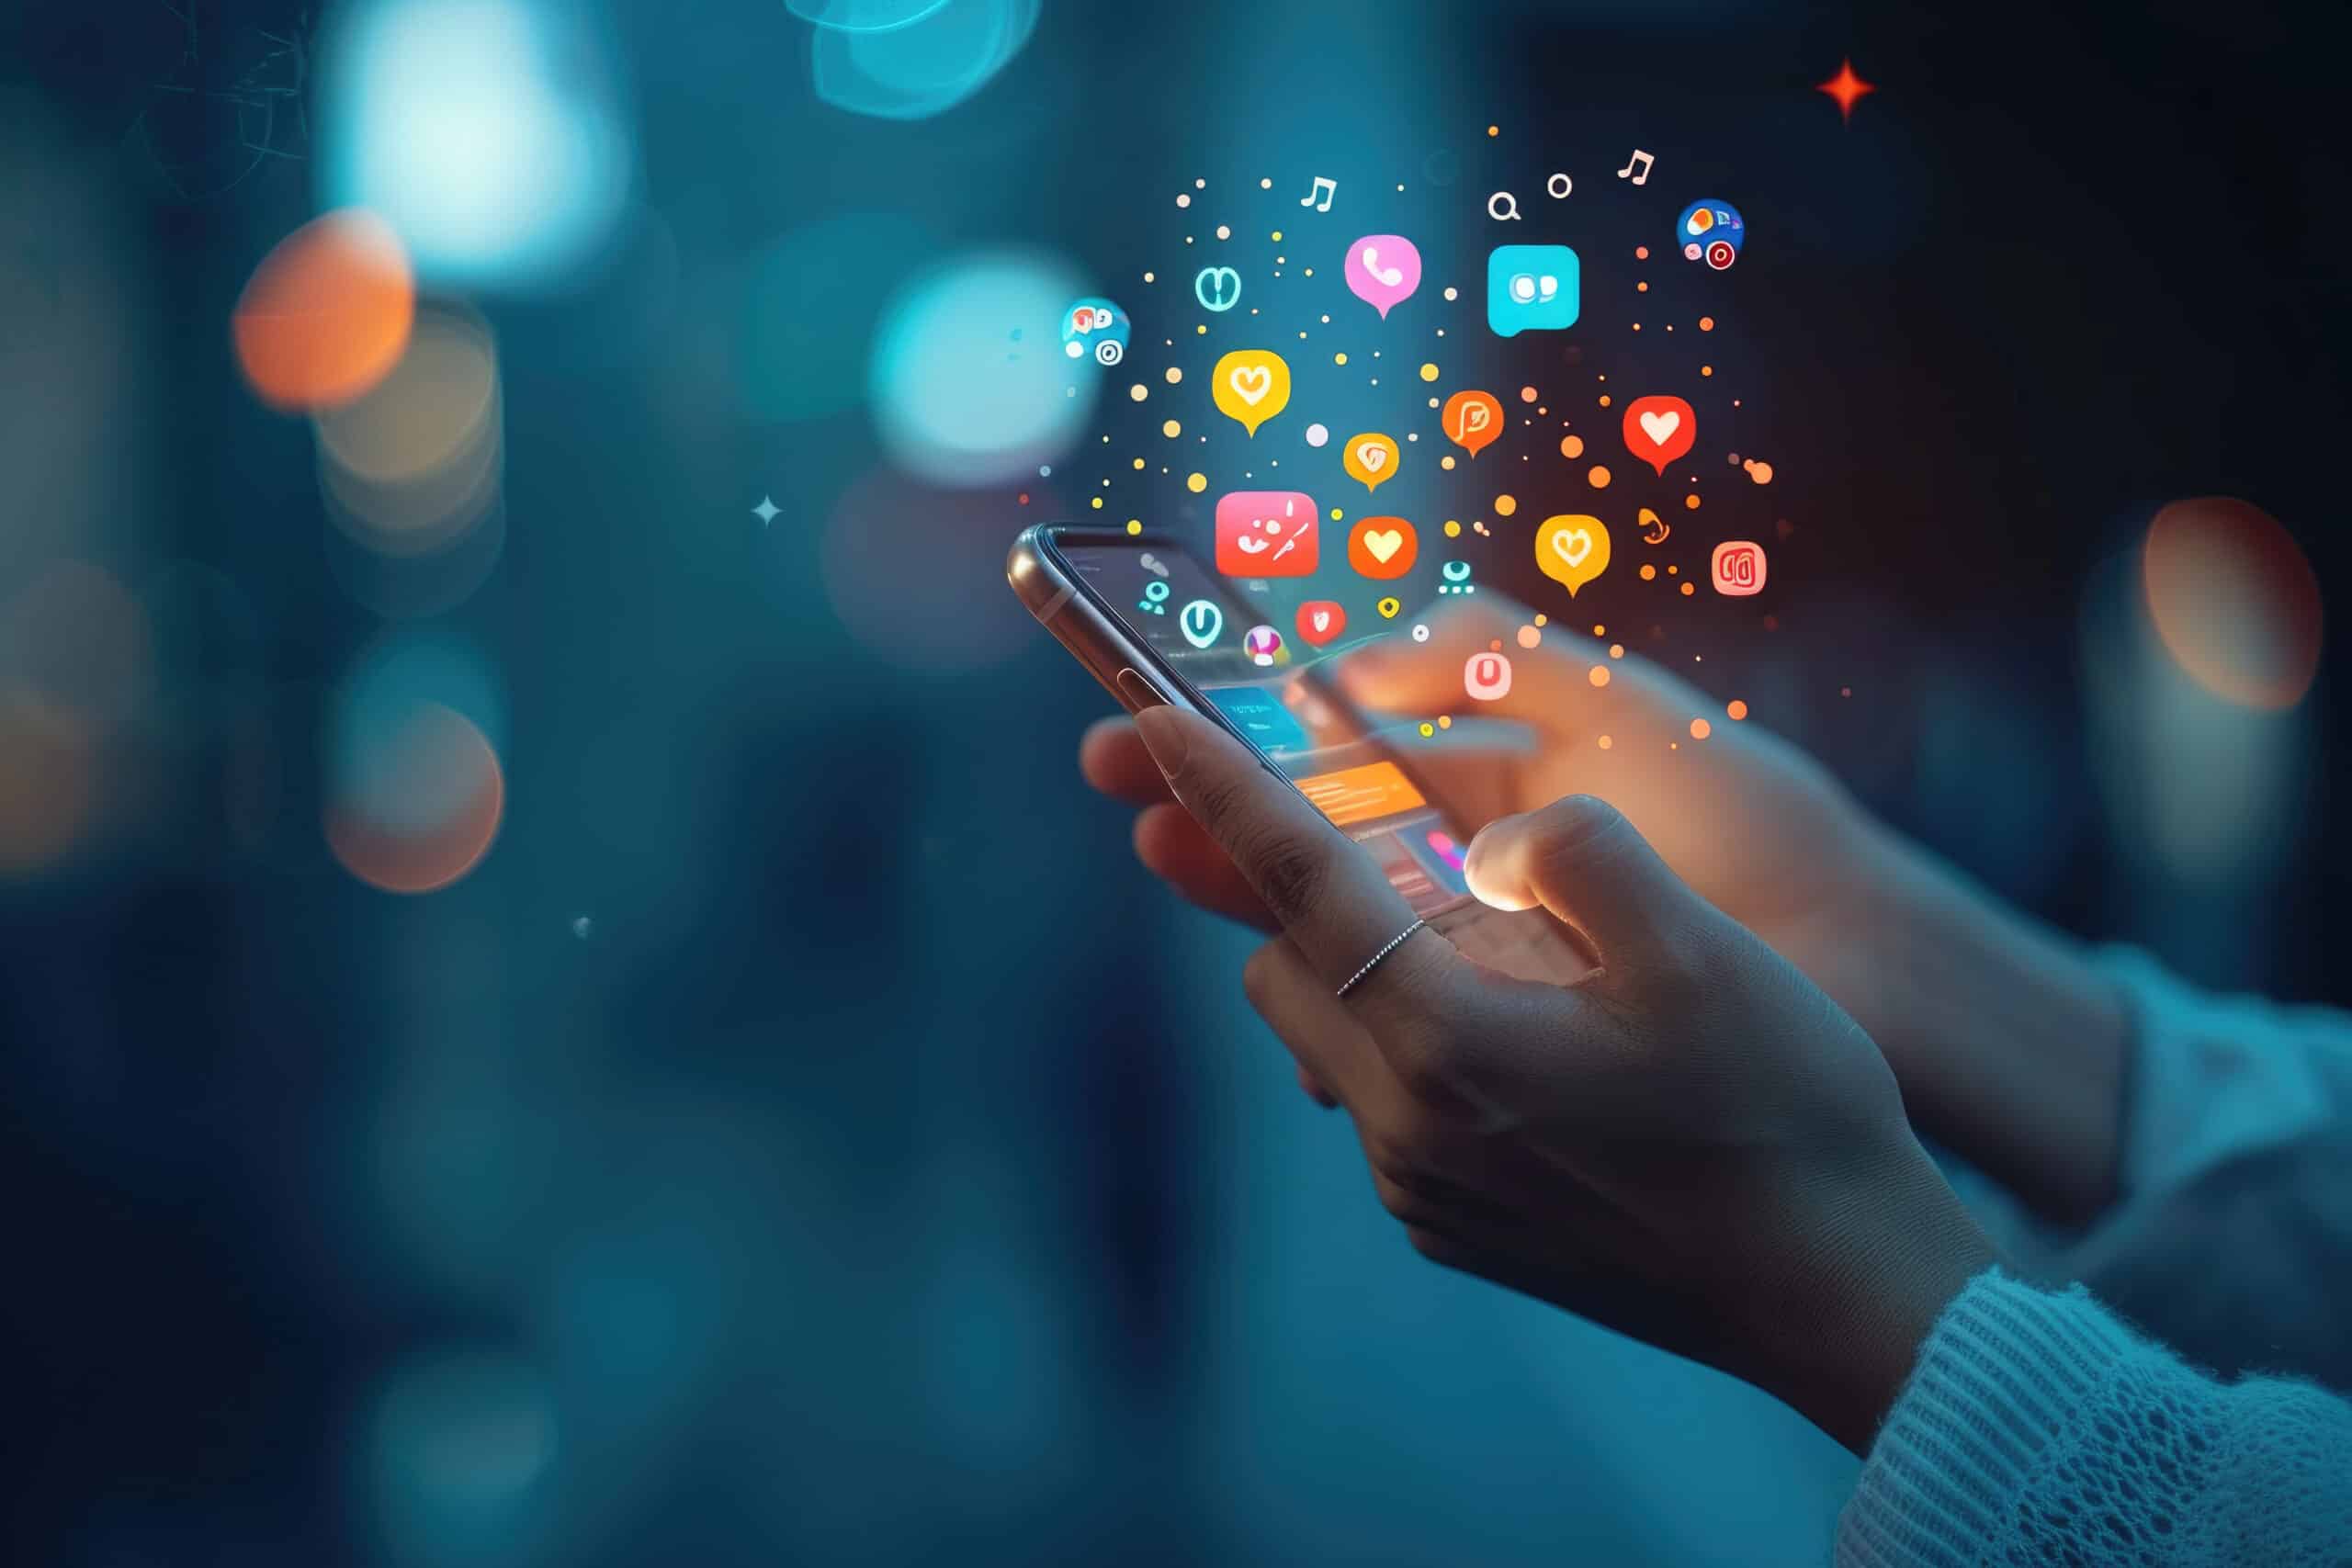 Eine Person hält ein Mobiltelefon mit einem Bildschirm, auf dem verschiedene Social-Media-Symbole leuchten. Konzept der Vernetzung mit der digitalen Welt.